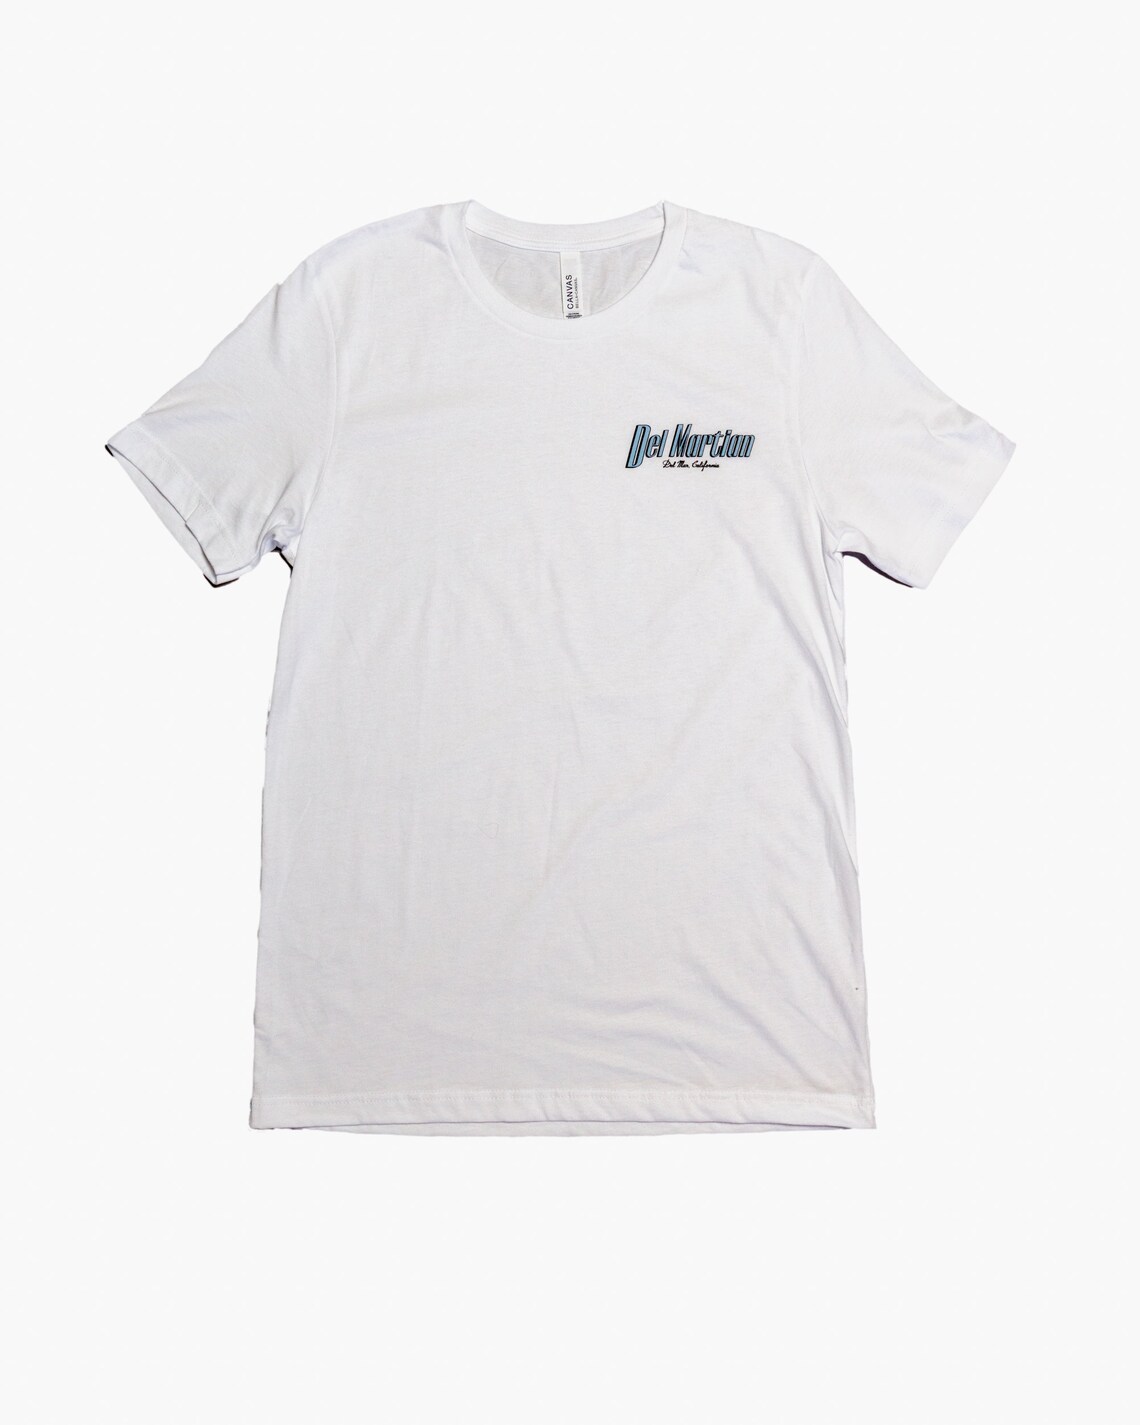 Del Mar California T Shirt Graphic T Shirt White T Shirt - Etsy